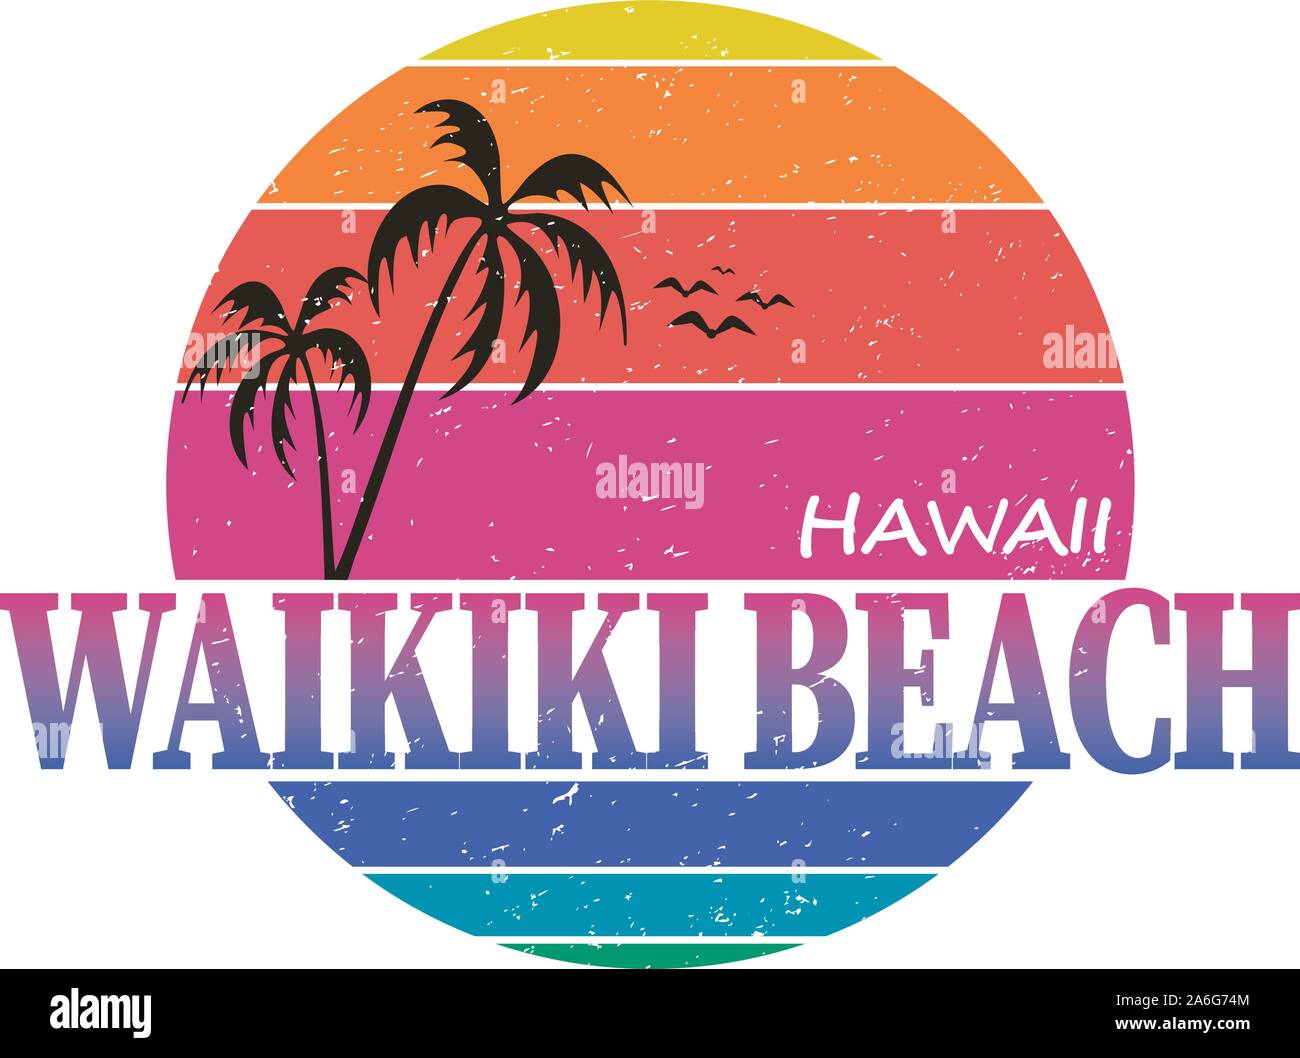 La plage de Waikiki hawaii surf vintage typographie design graphique Illustration de Vecteur